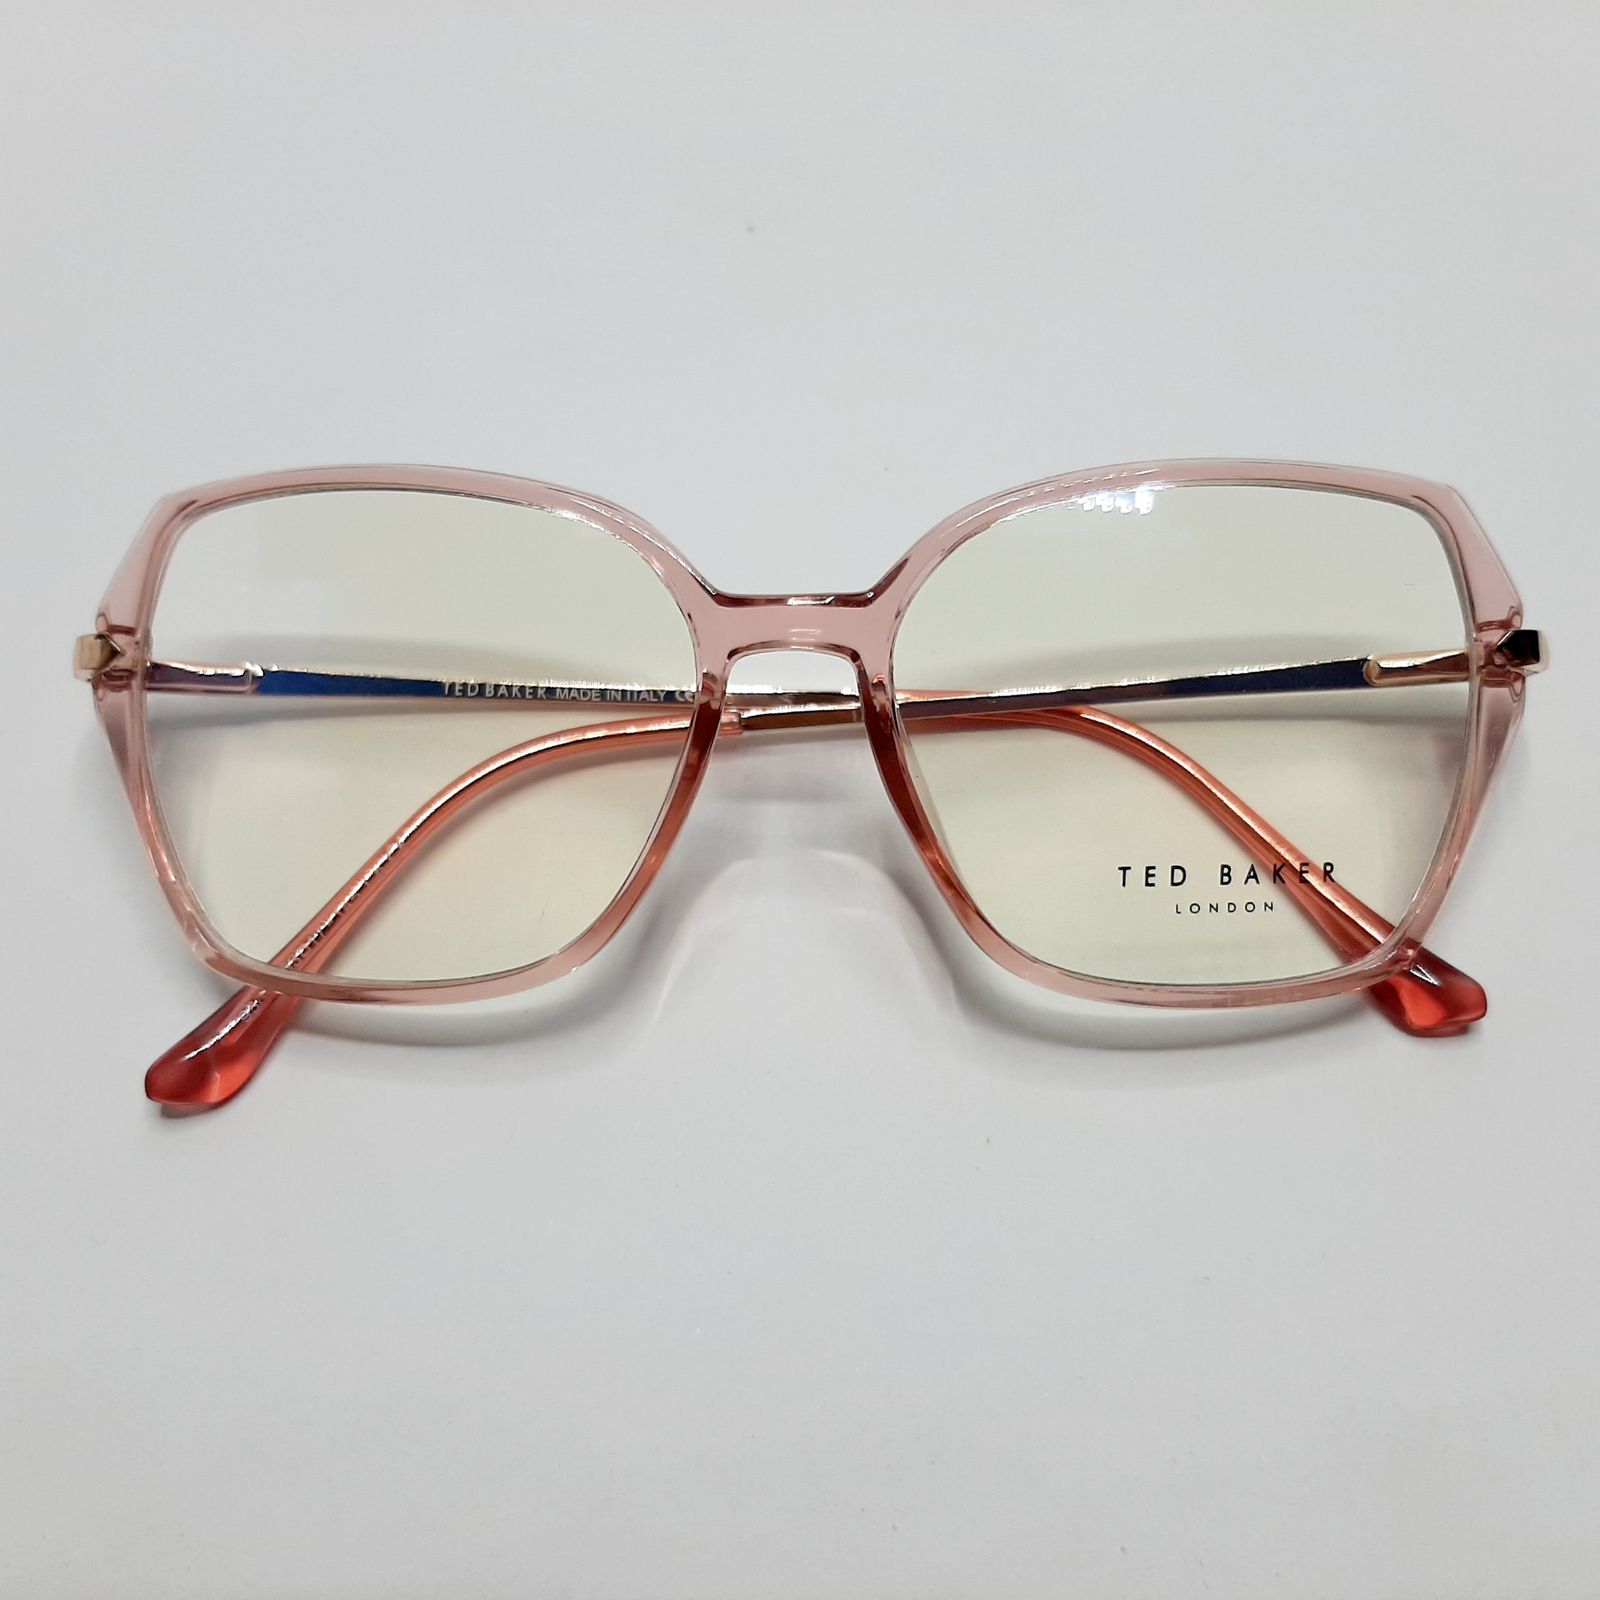 فریم عینک طبی زنانه تد بیکر مدل 95642c6 -  - 8